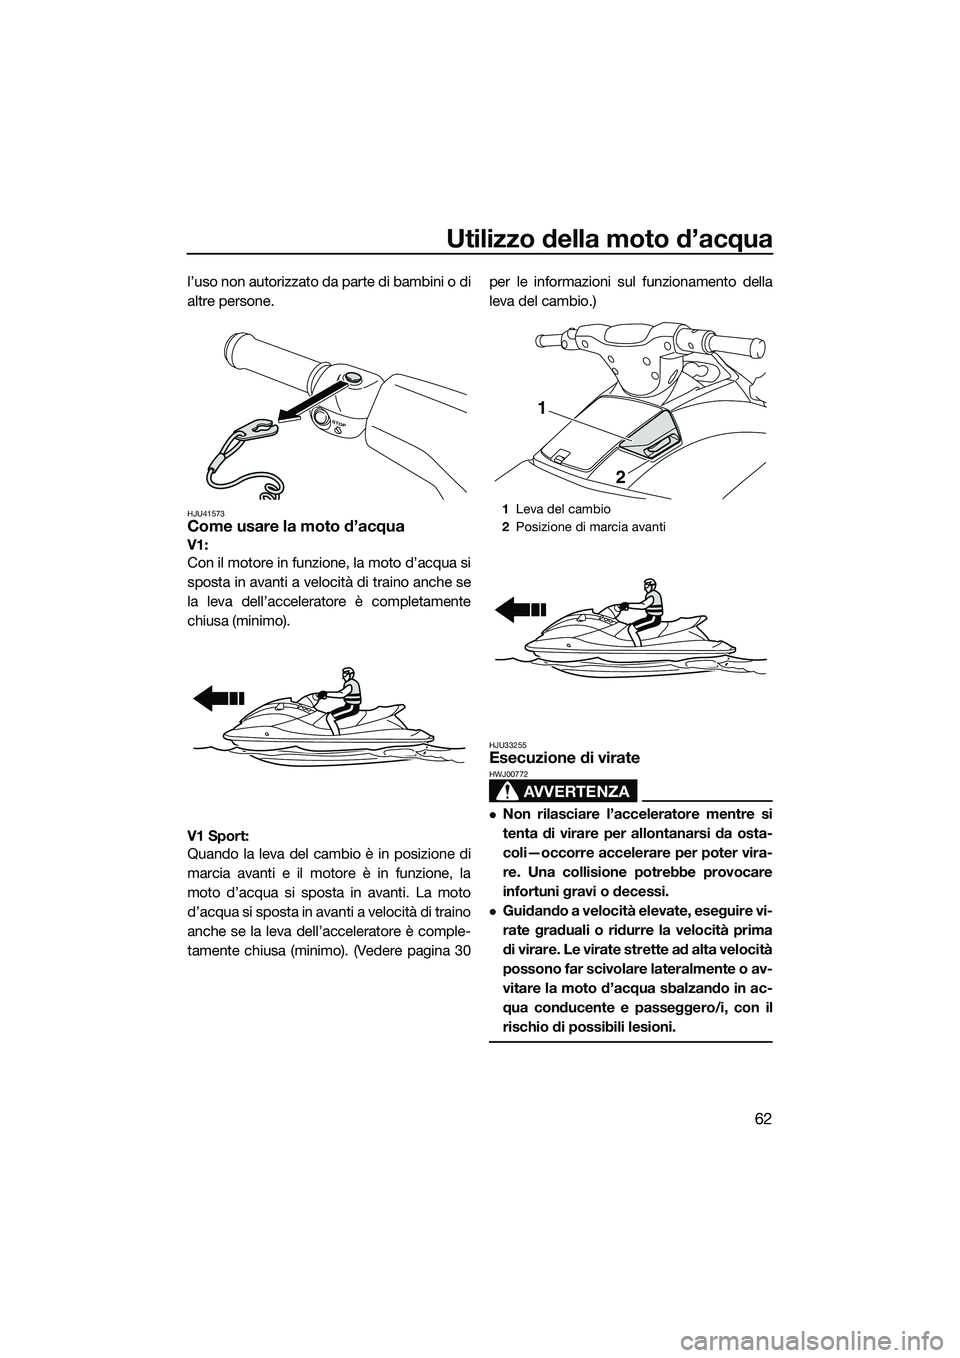 YAMAHA V1 SPORT 2015  Manuale duso (in Italian) Utilizzo della moto d’acqua
62
l’uso non autorizzato da parte di bambini o di
altre persone.
HJU41573Come usare la moto d’acqua
V1: 
Con il motore in funzione, la moto d’acqua si
sposta in ava